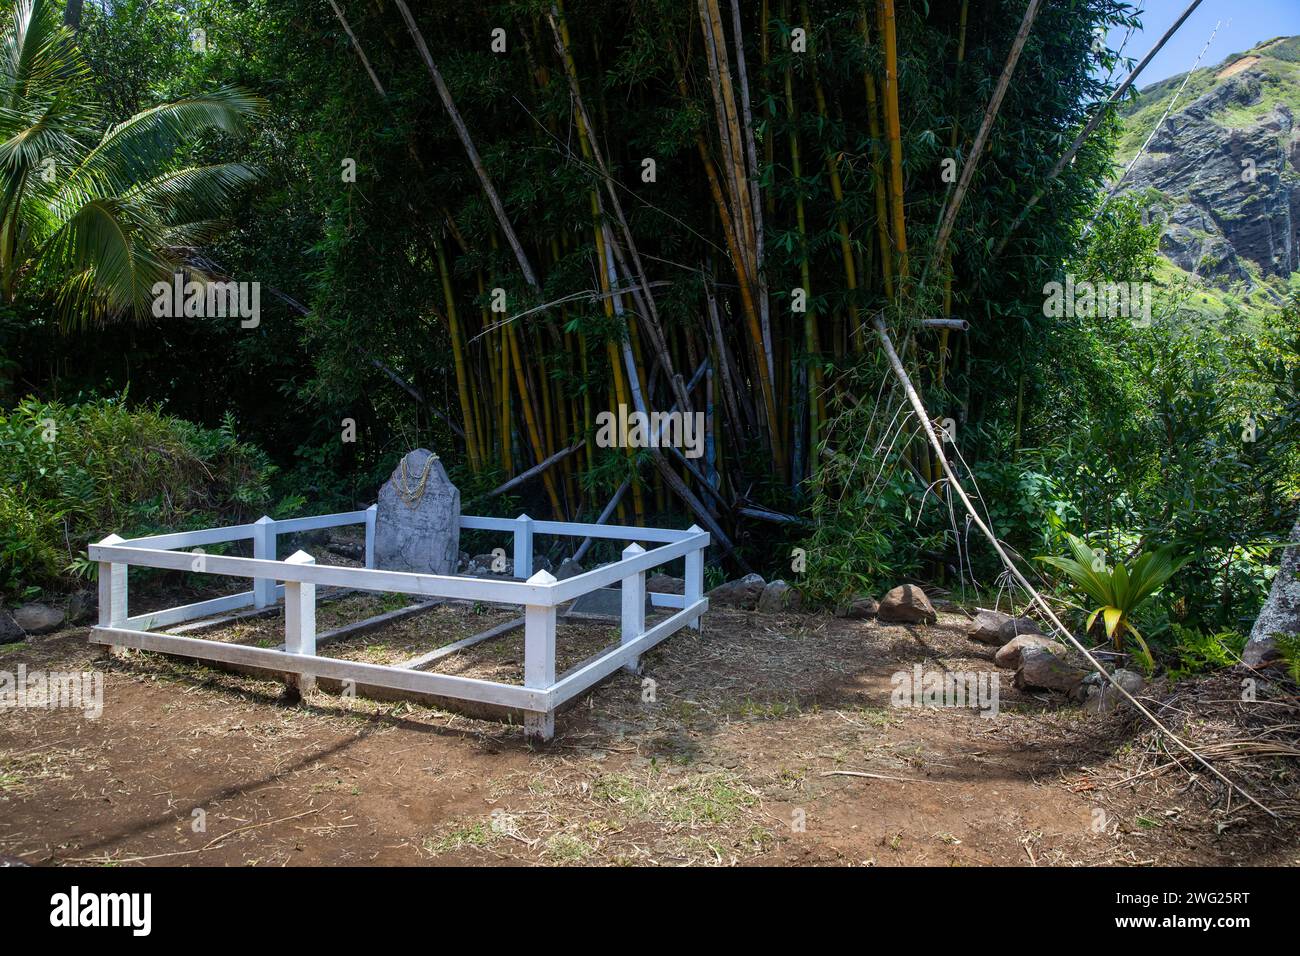 Tomba di John Adams sull'isola di Pitcairn nel Pacifico meridionale, fu l'ultimo degli ammutinati dell'isola e l'unico con una tomba nota. Foto Stock